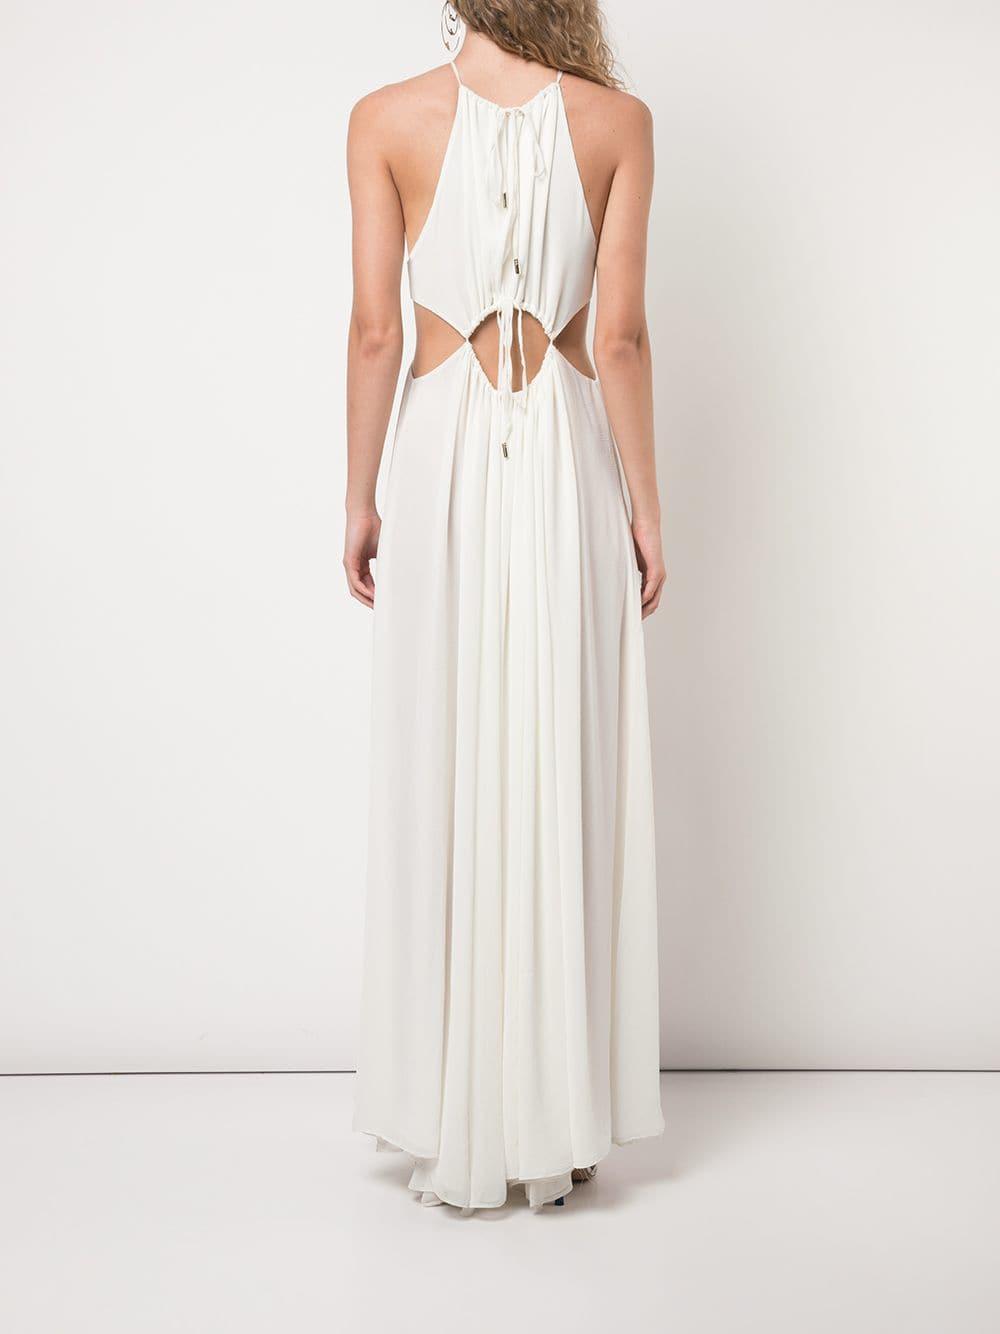 Cult Gaia Aphrodite Dress in White - Lyst